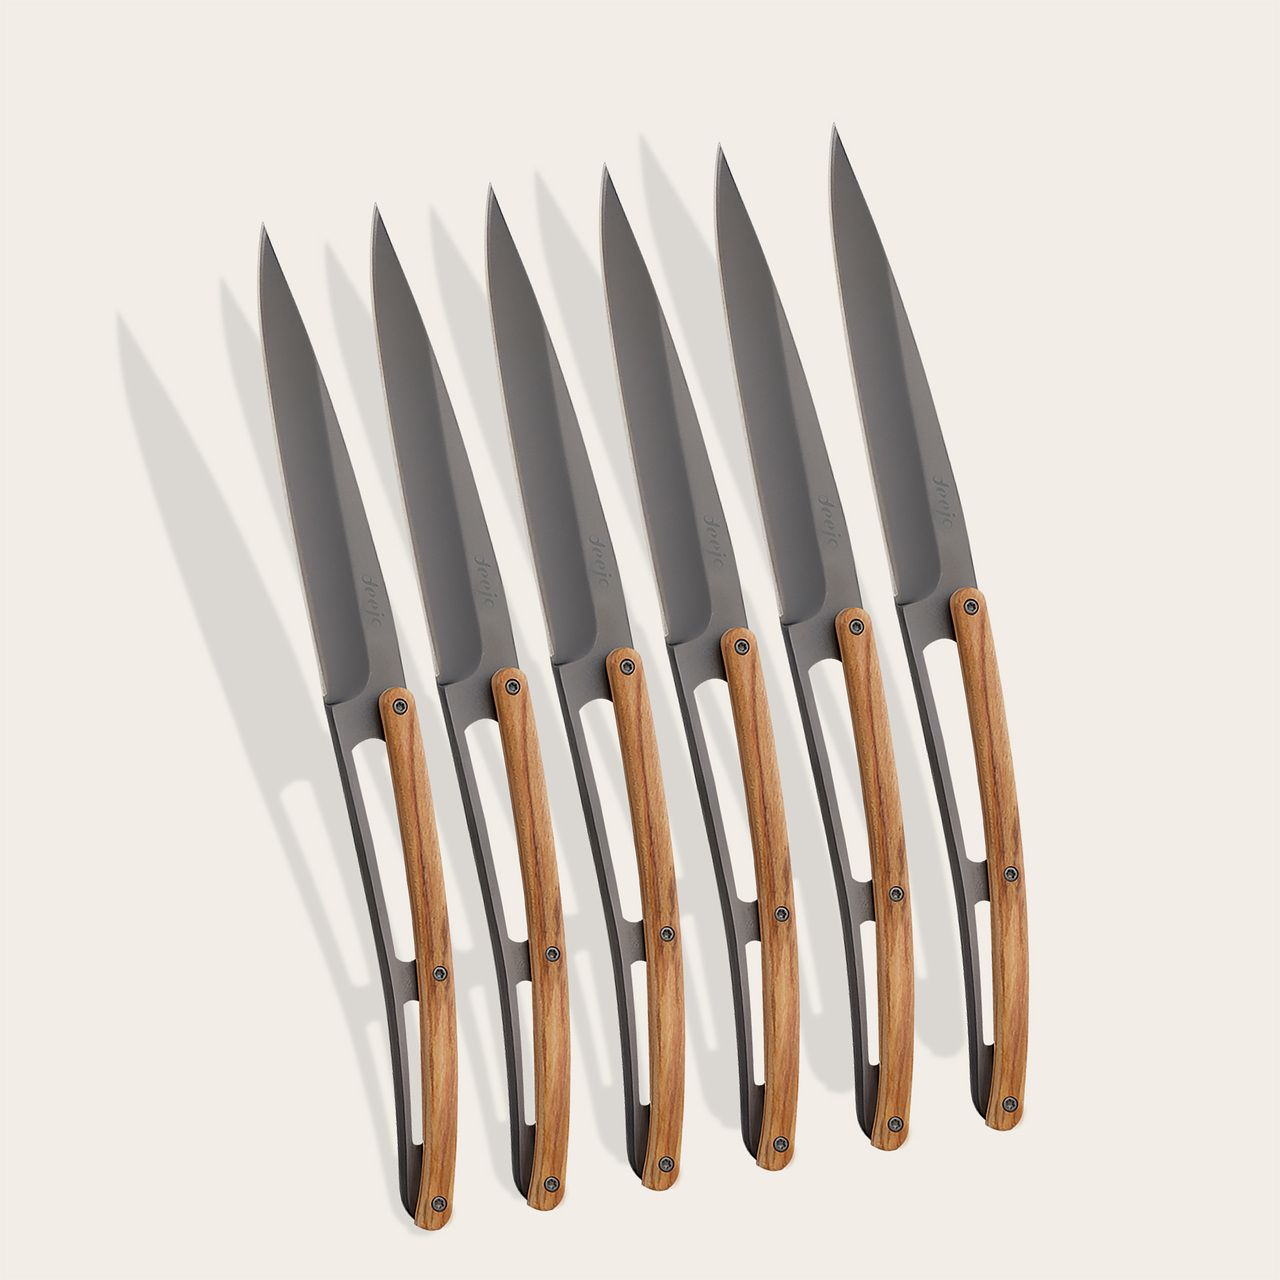 https://www.deejo.com/medias/produits/323235386/22473_1280-6-deejo-steak-knives-olive-wood.jpg